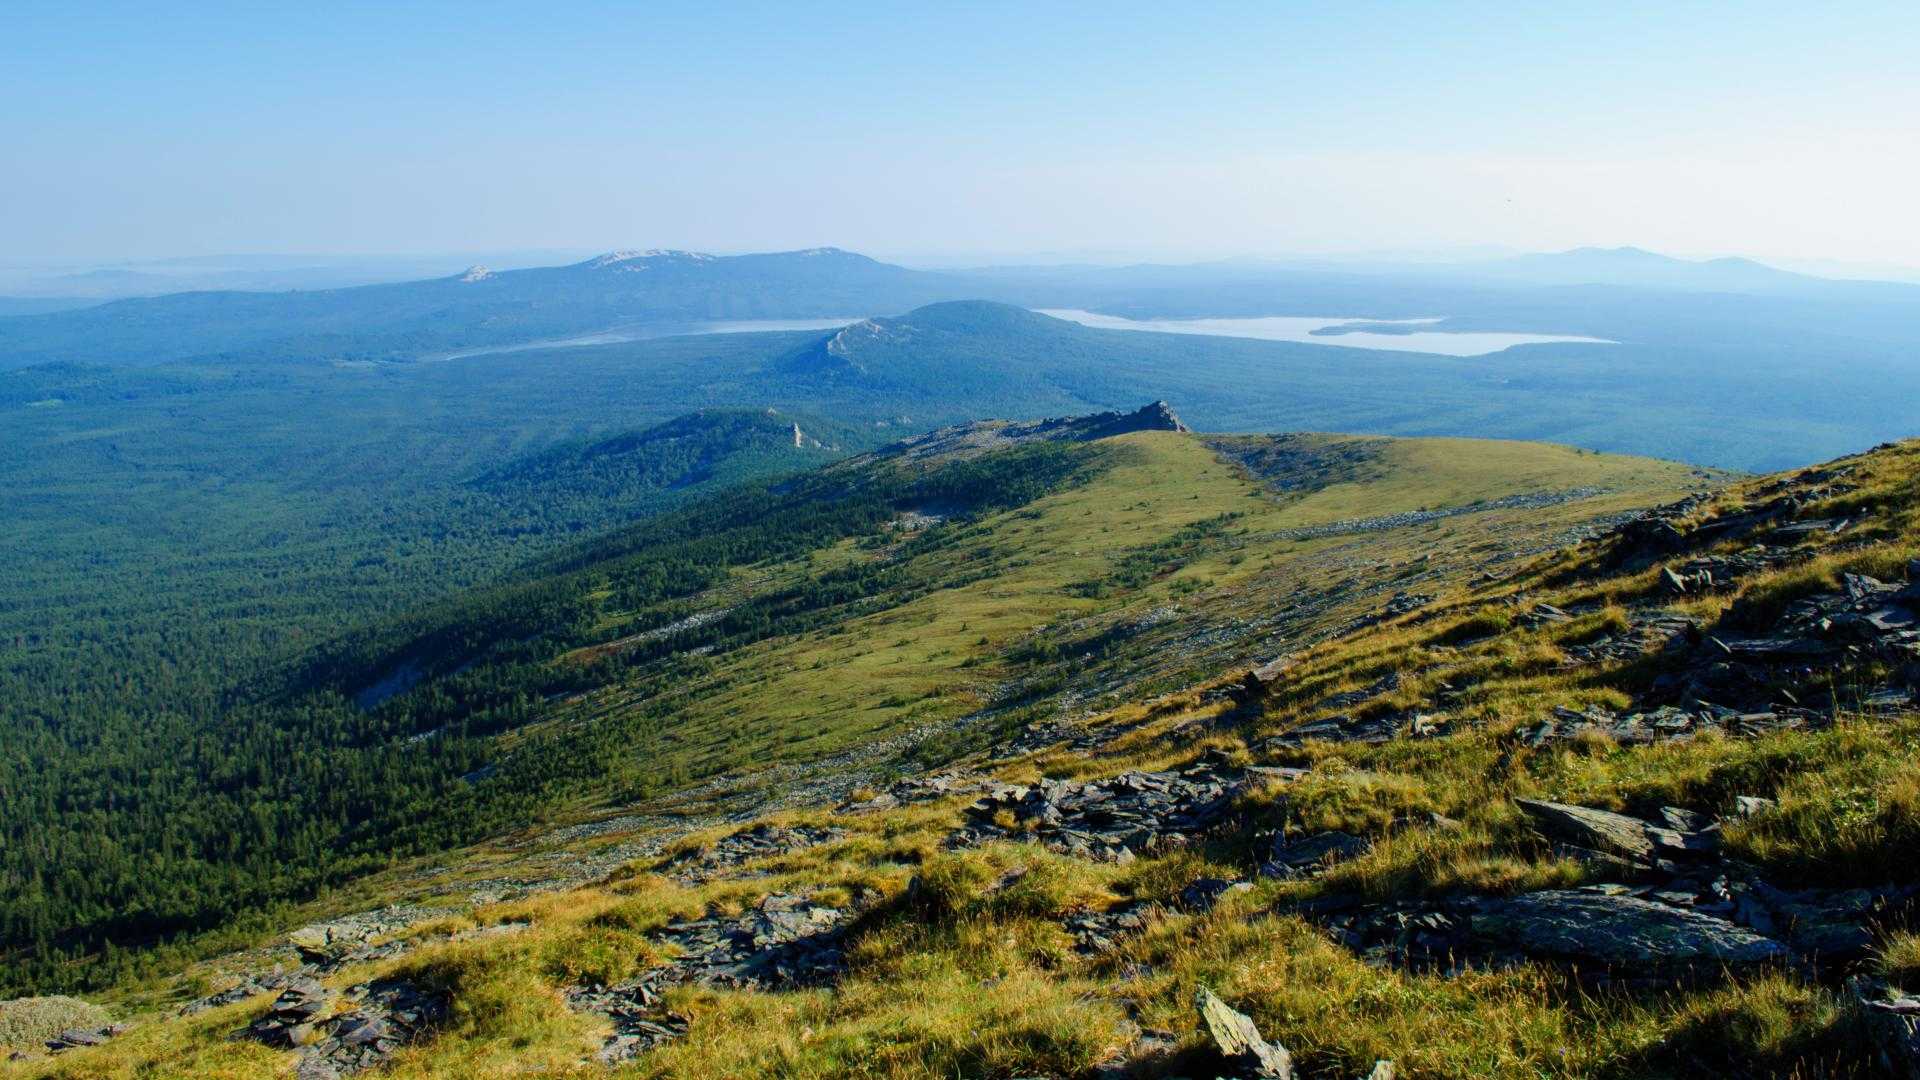 Горы в евразии — список самых высоких и низких возвышенностей с названиями